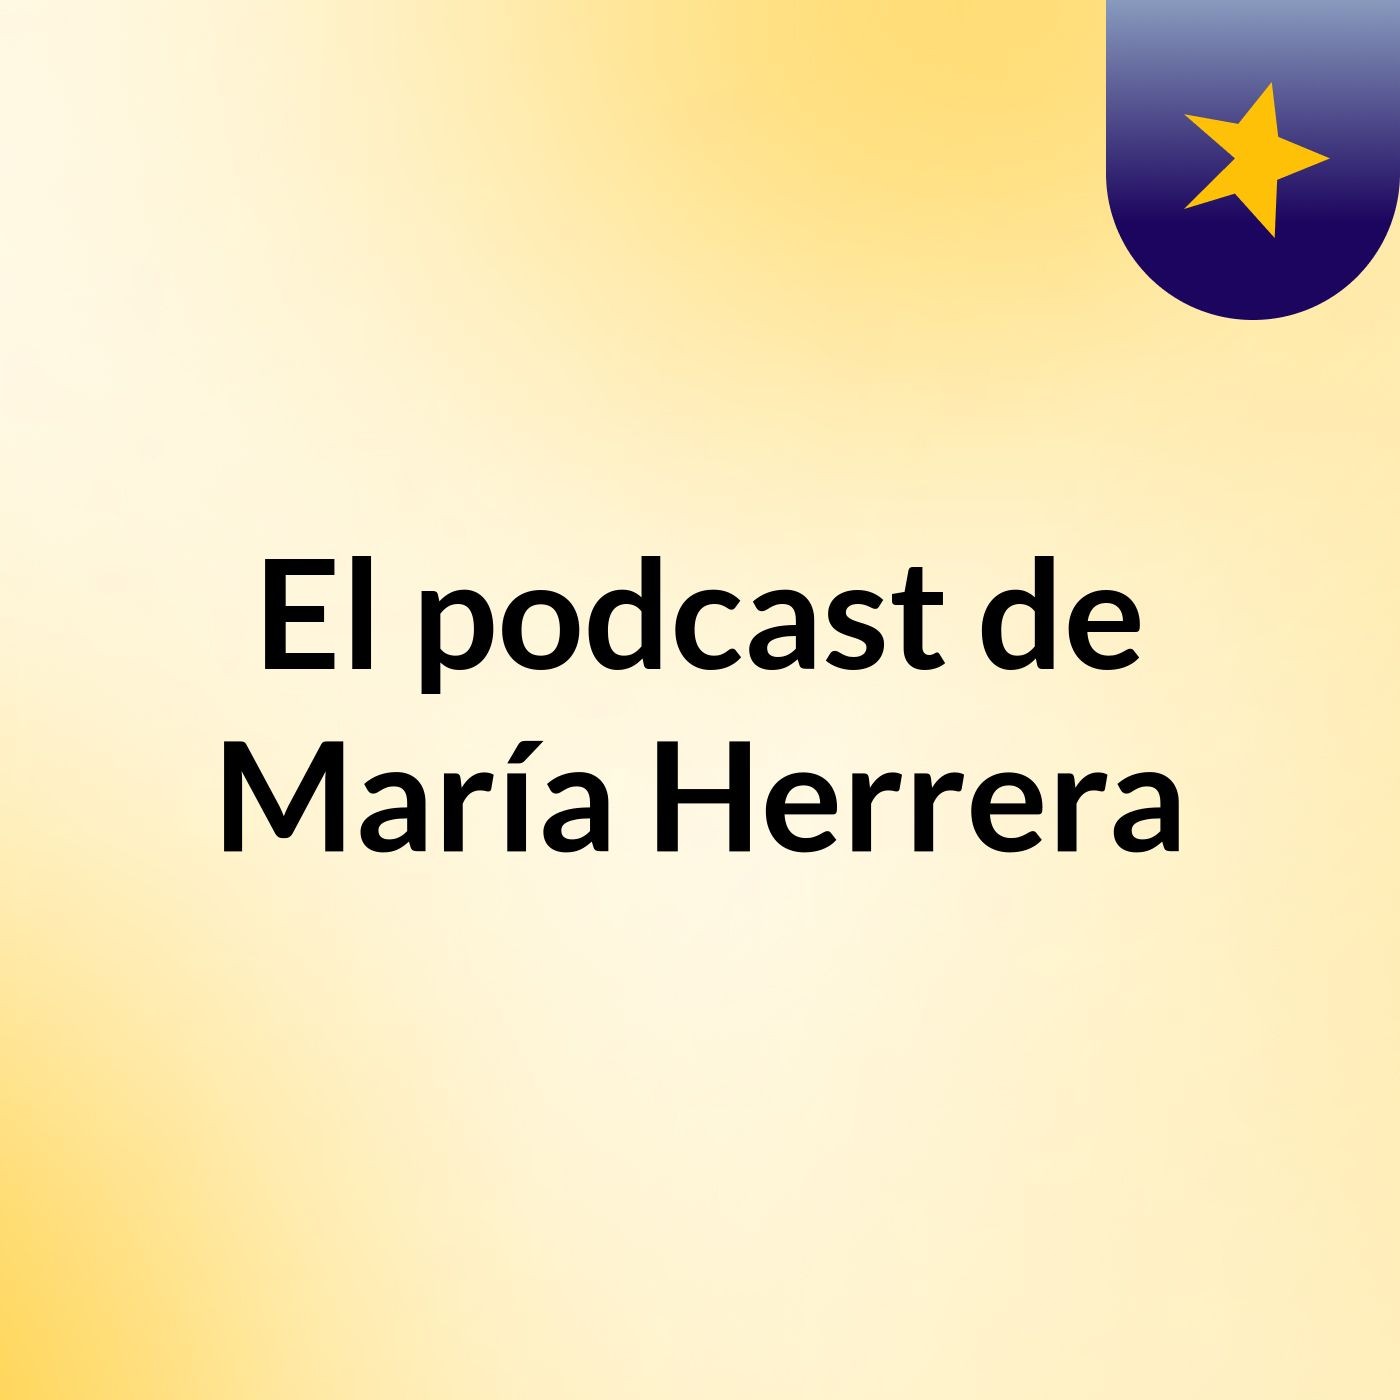 Episodio 5 - El podcast de María Herrera